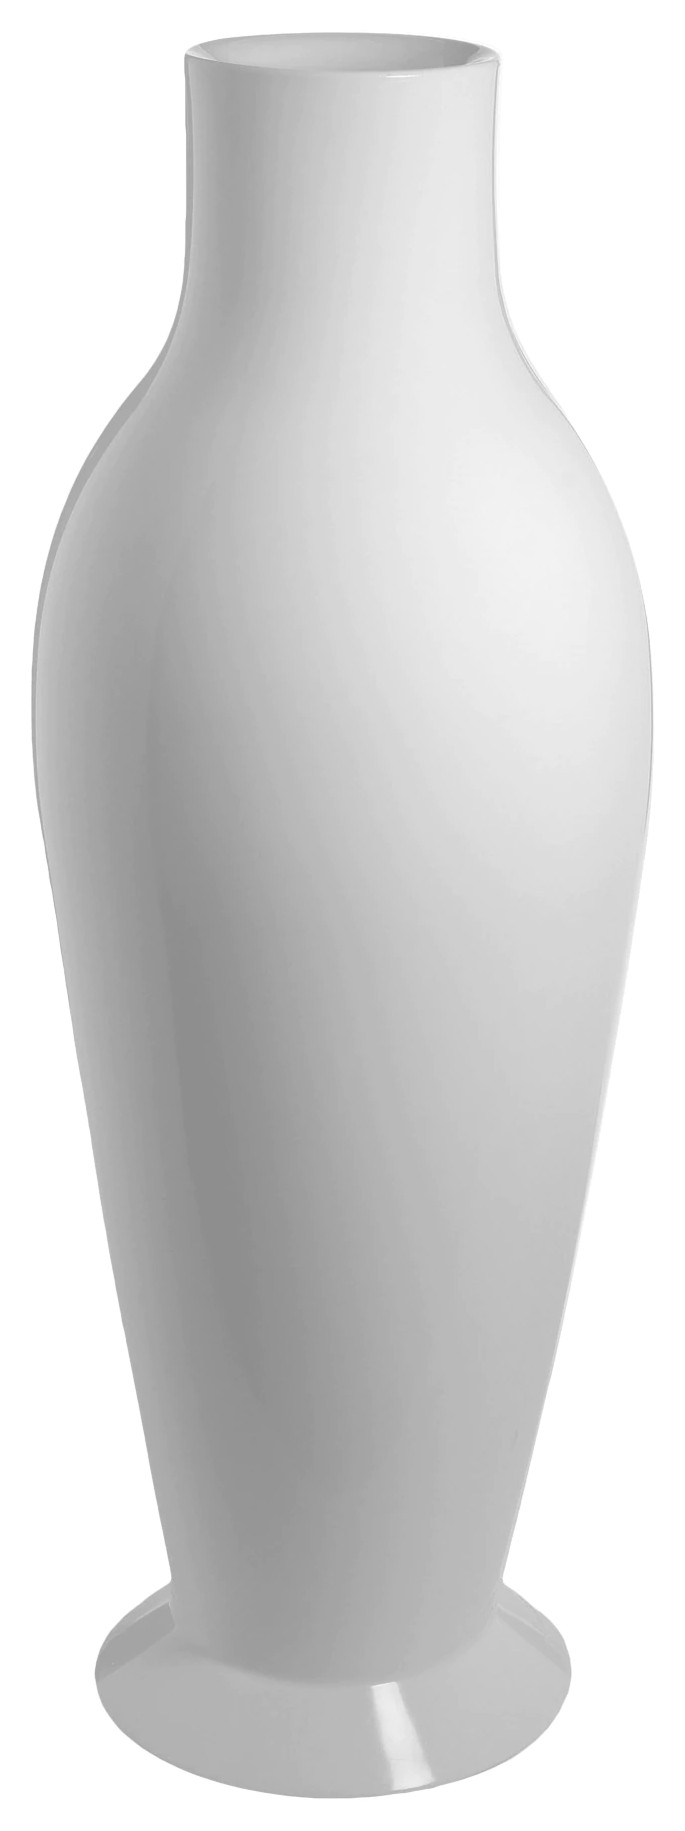 Vaza Kartell Misses Flower Power design Philippe Stark & Eugeni Quitllet h164cm alb lucios (POWER